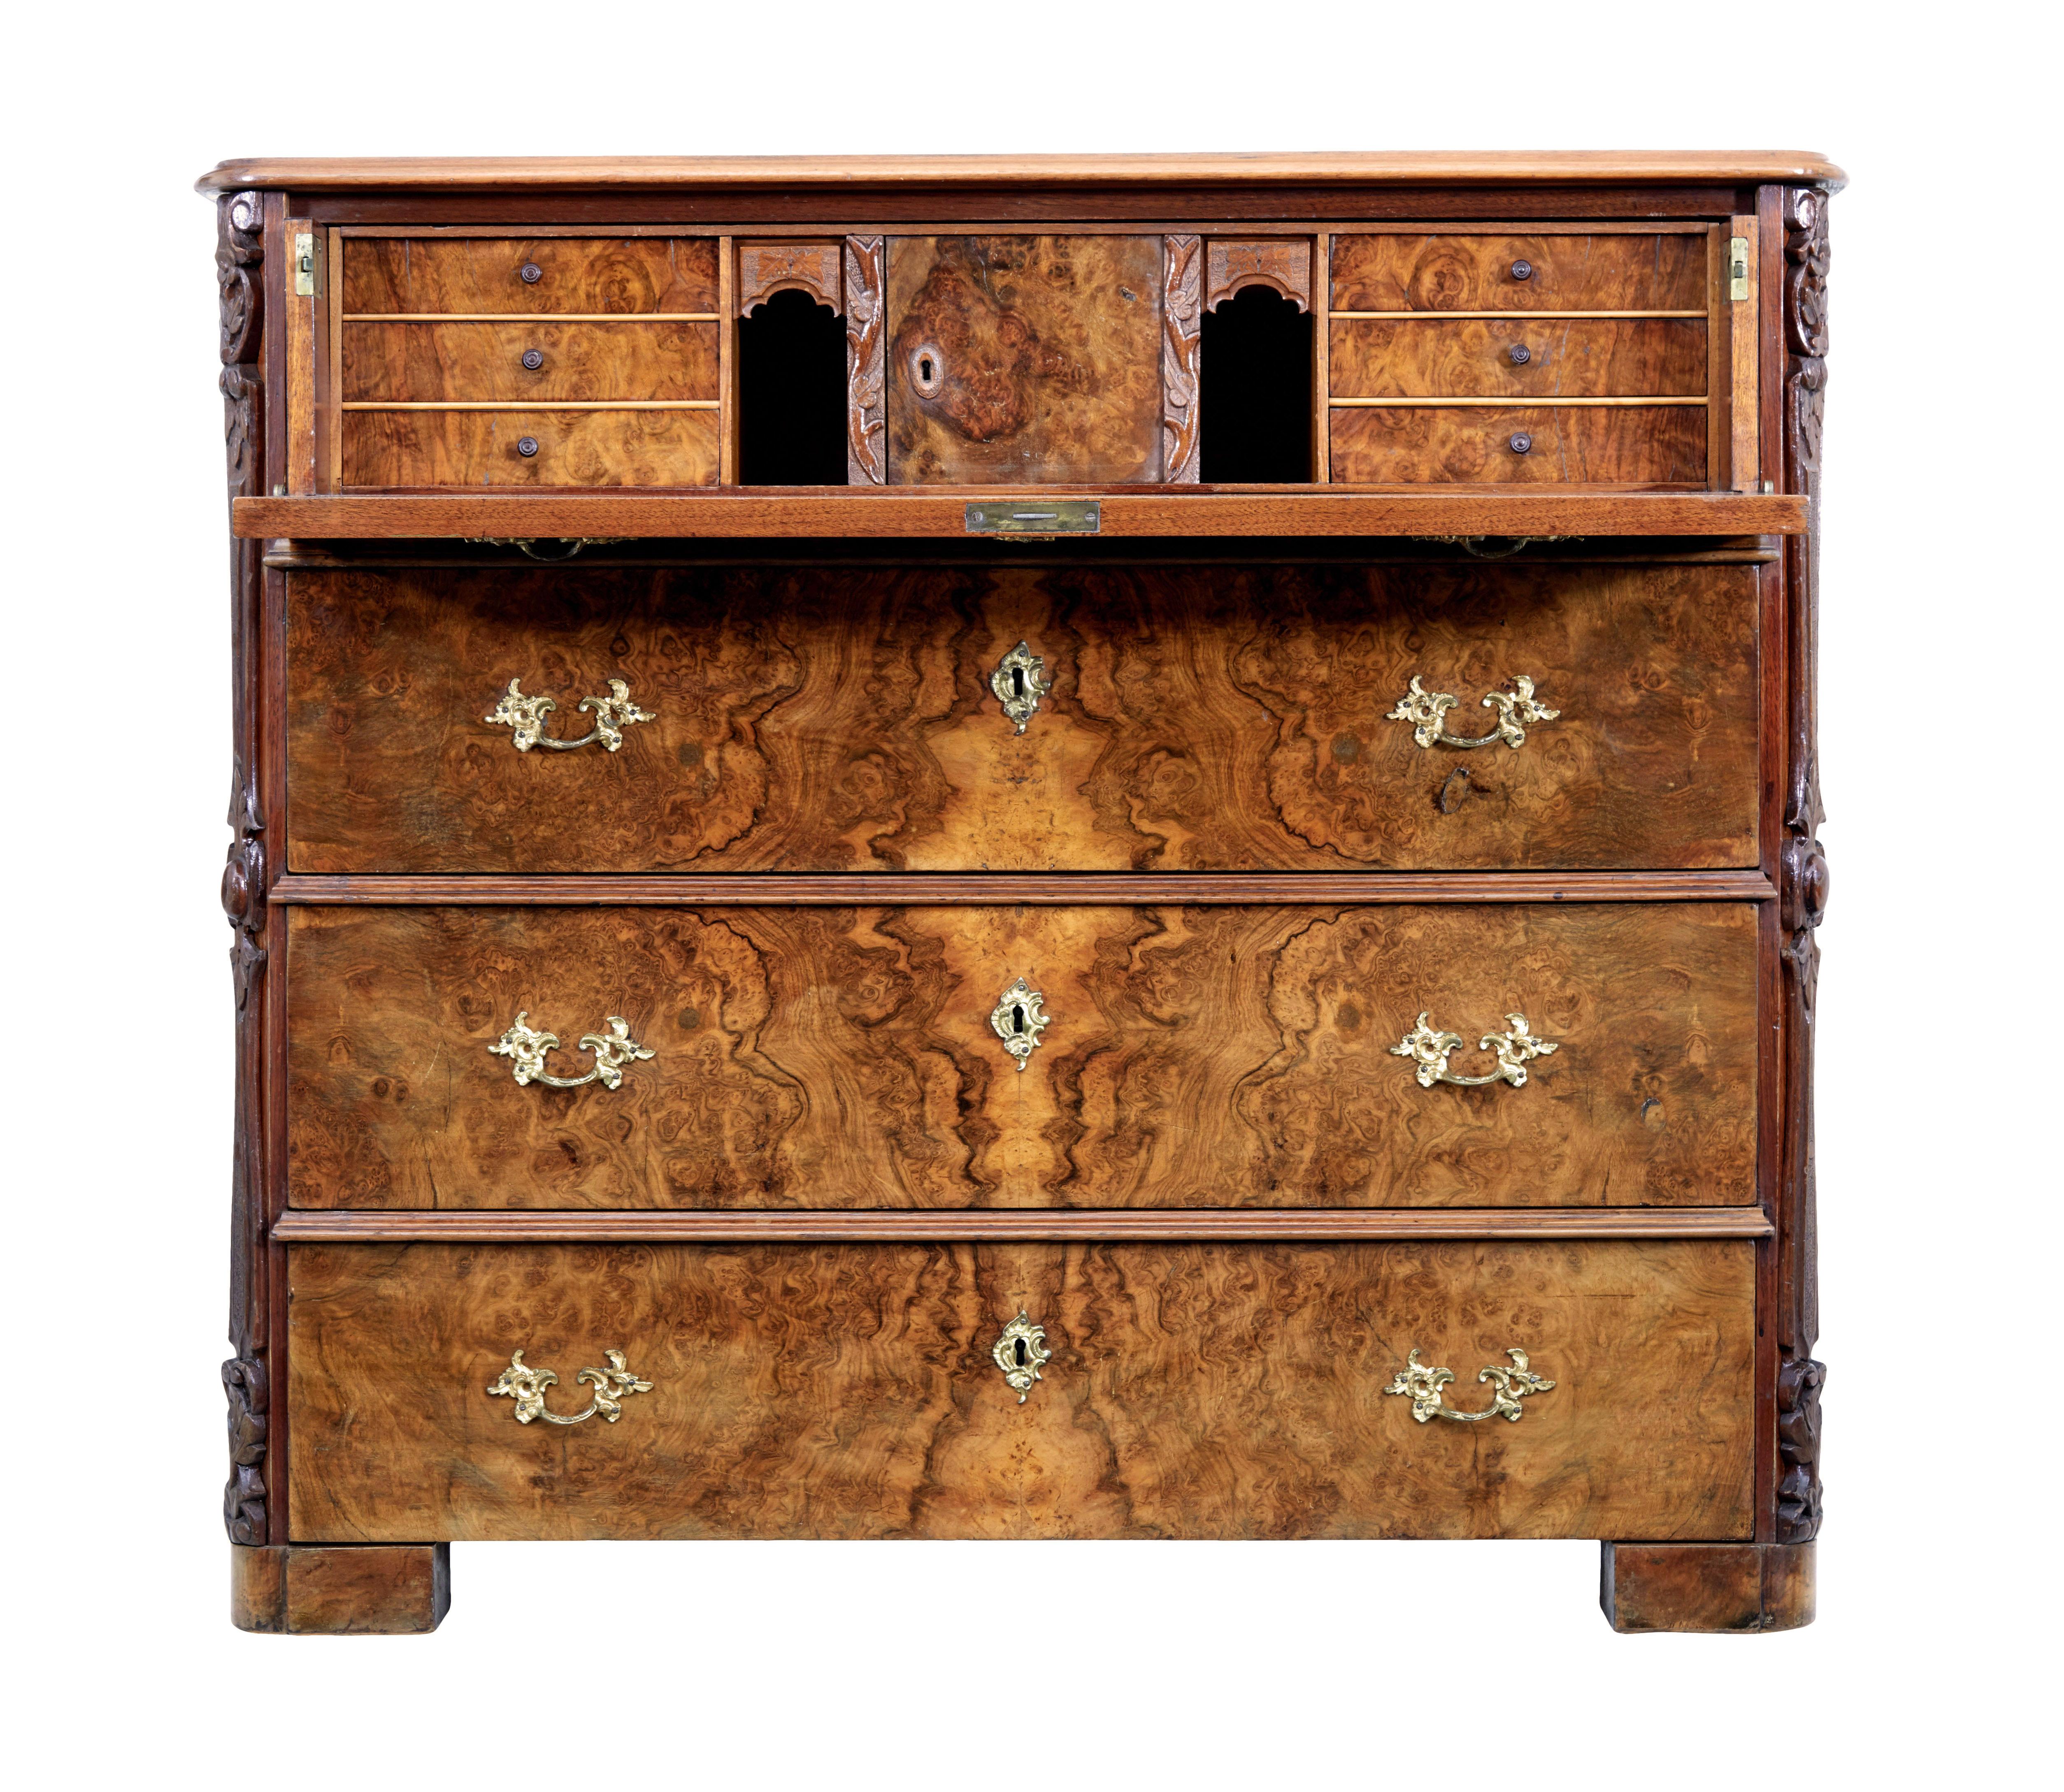 Sekretariatskommode aus Wurzelnussholz, 19. Jahrhundert, um 1870.

Qualitativ hochwertige Kommode mit 4 Schubladen, wobei die oberste Schublade ausziehbar ist und als Schreibfläche für einen Sekretär dient.

4 gleich große Schubladenfronten,